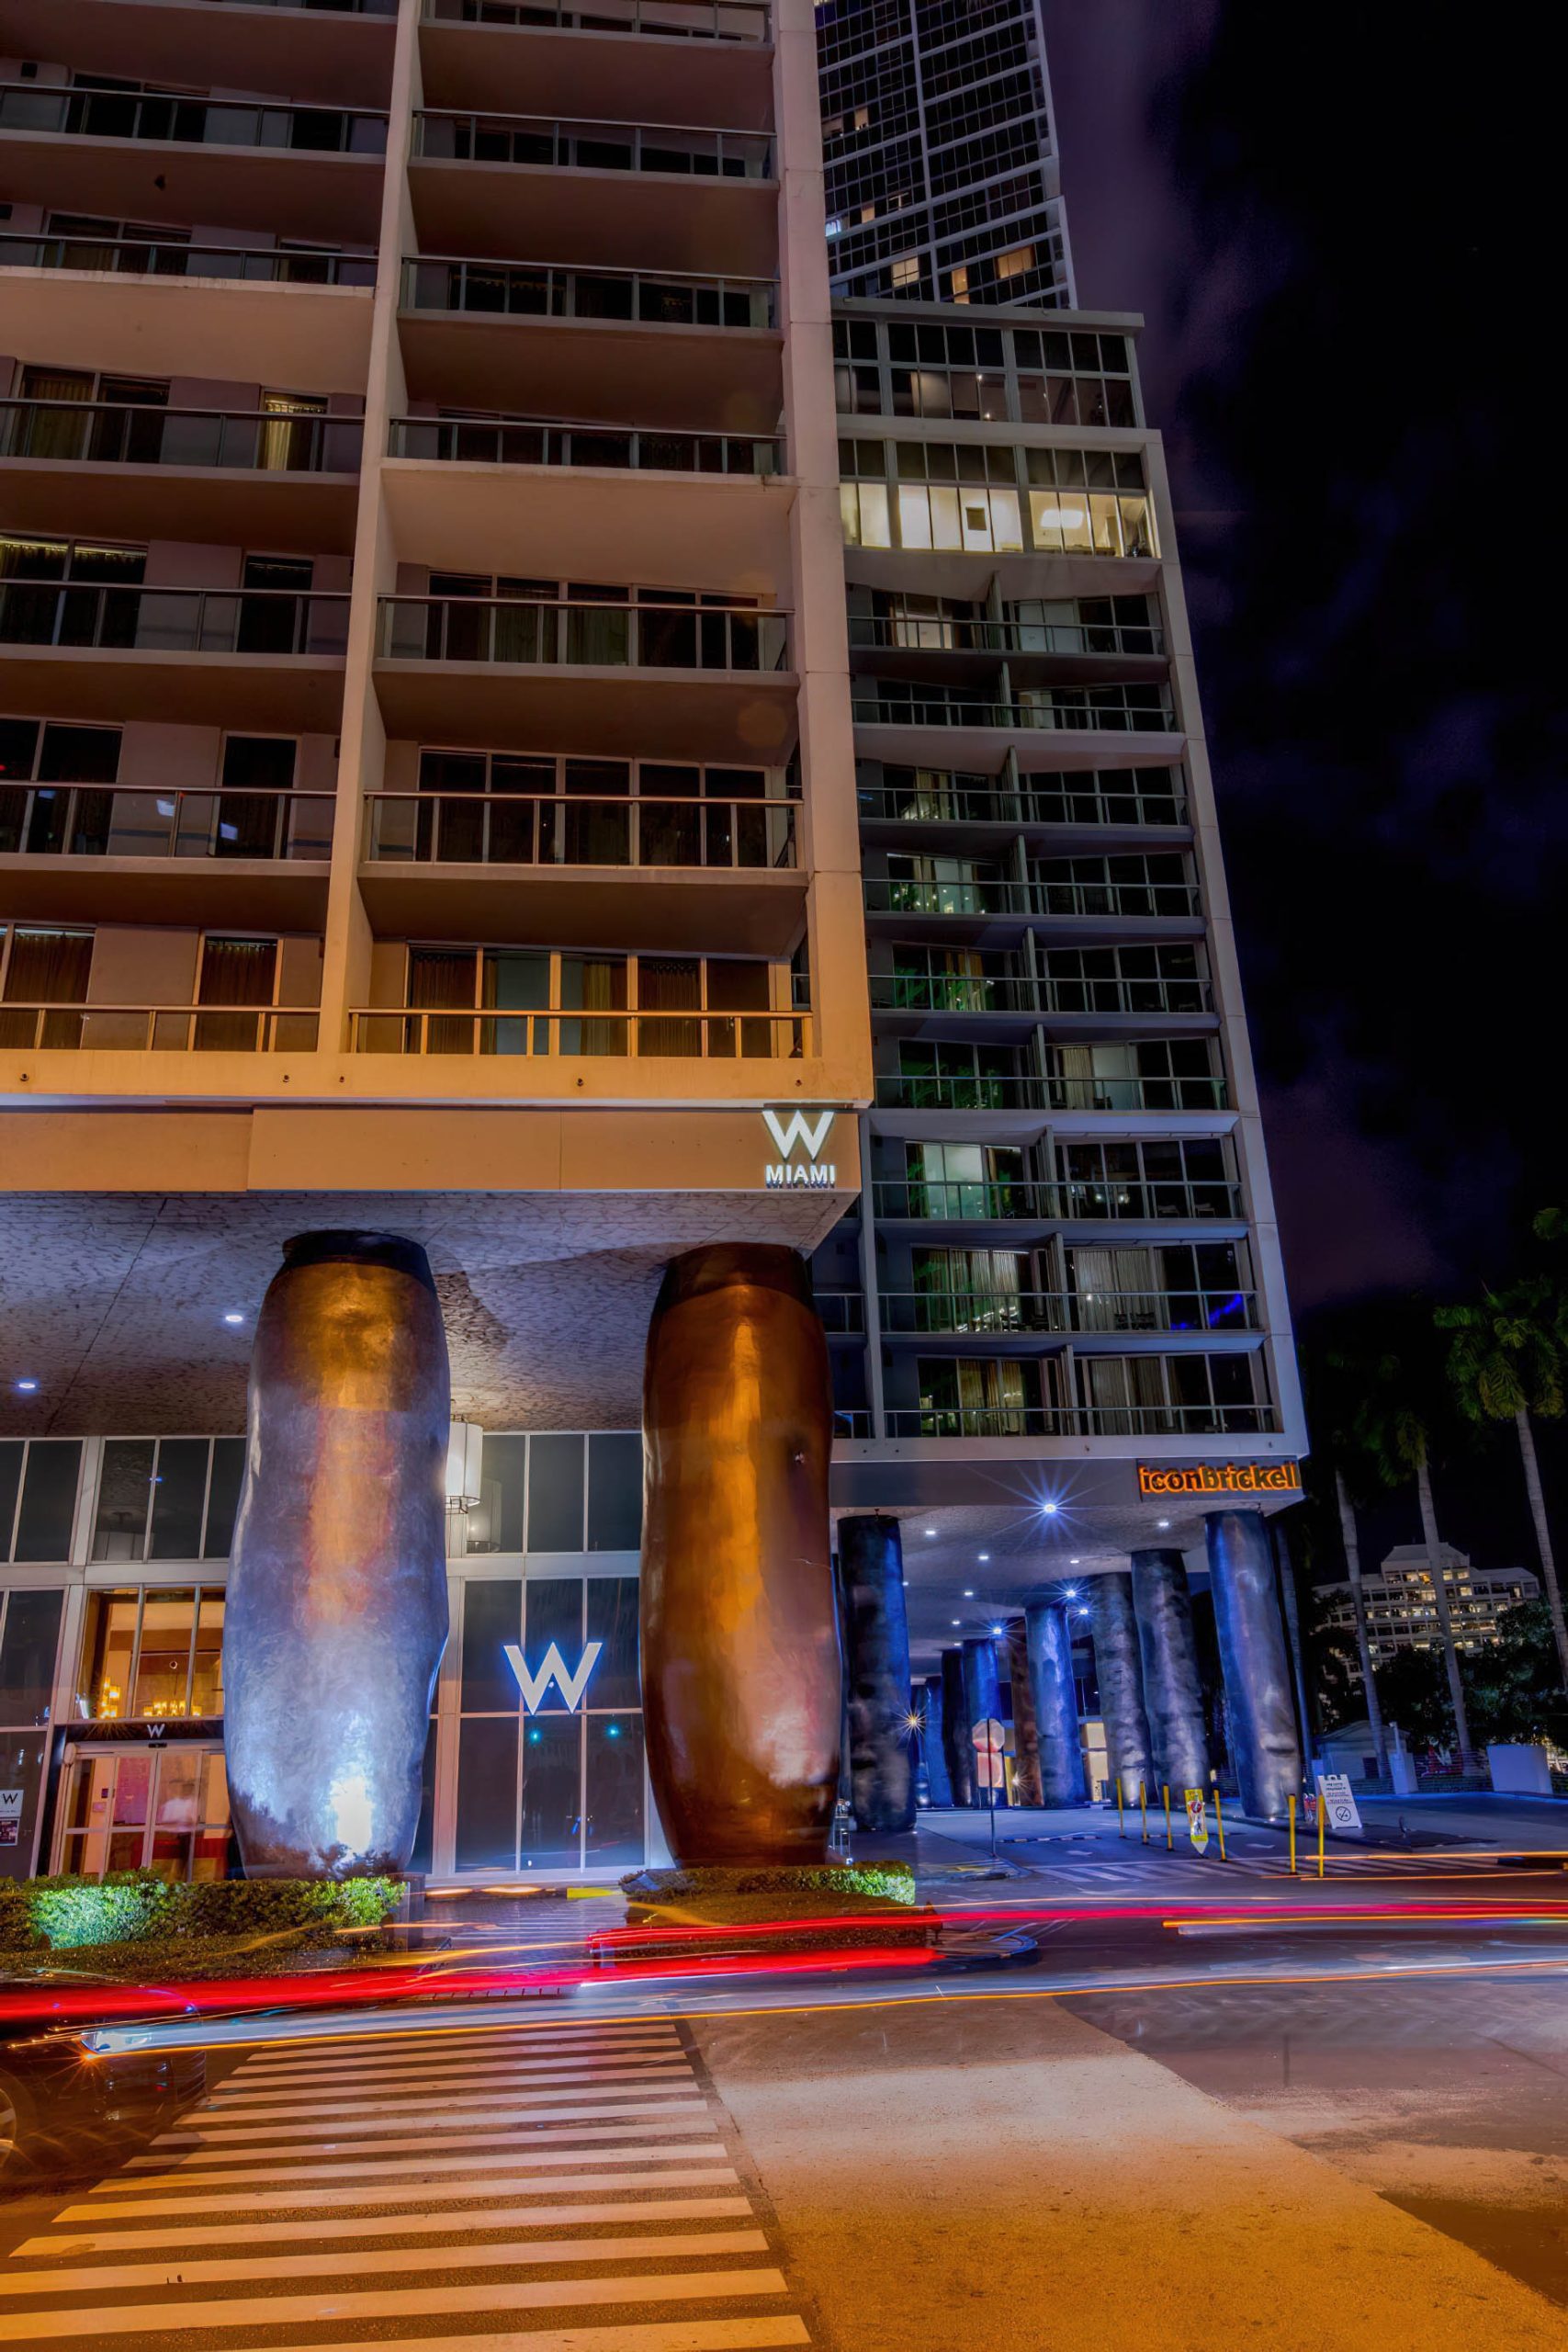 W Miami Hotel - Miami, FL, USA - Night View